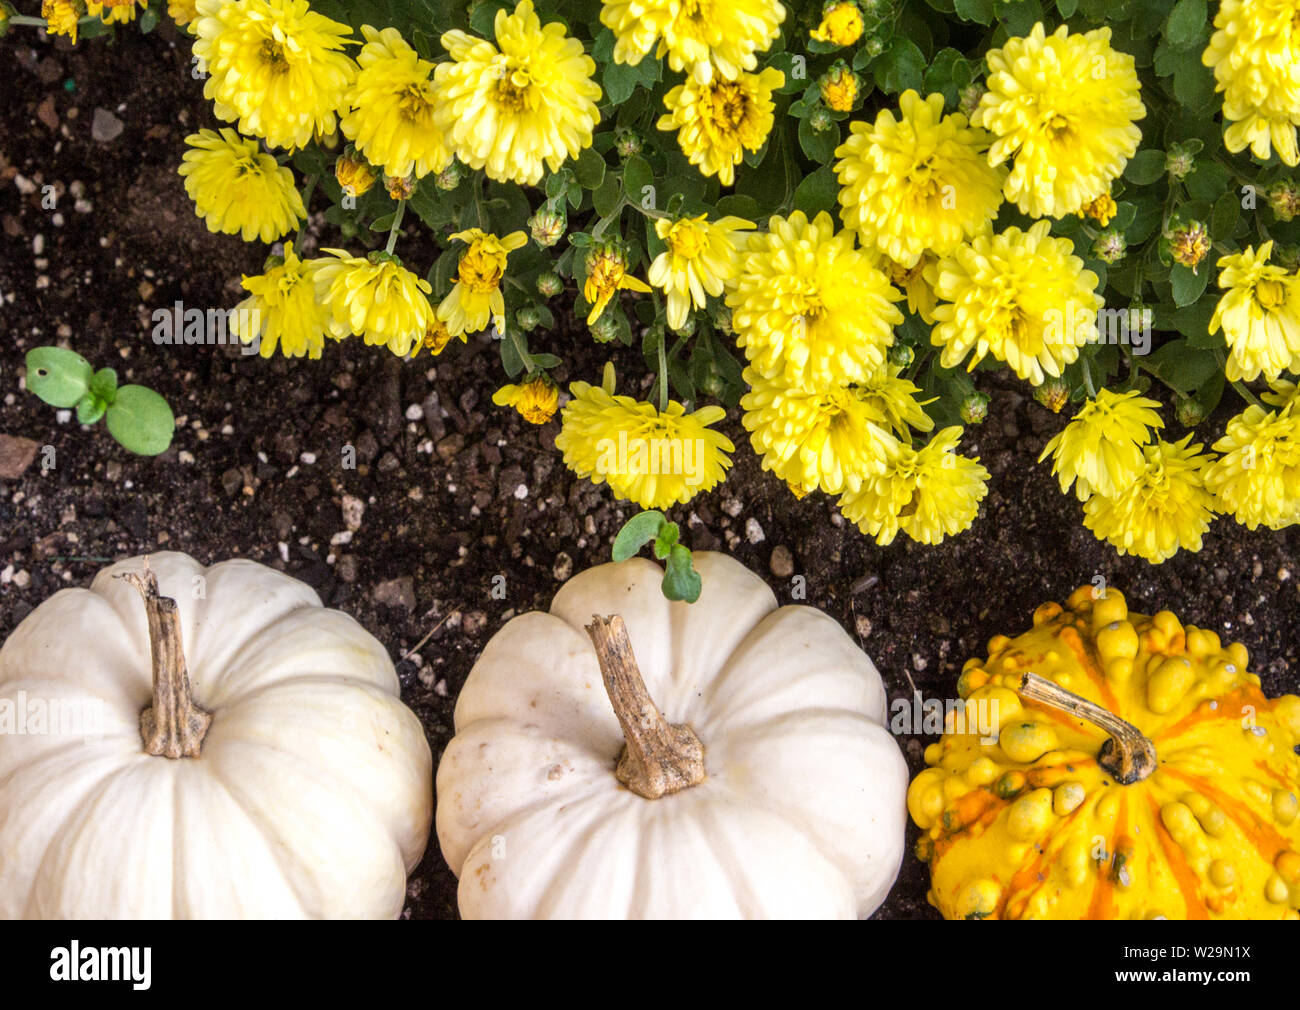 Herbst Ernte Hintergrund. Kürbisse Kürbisse und mit brillanten farbigen Chrysanthemen in reichen schwarzen Garten Boden gekoppelt. Stockfoto